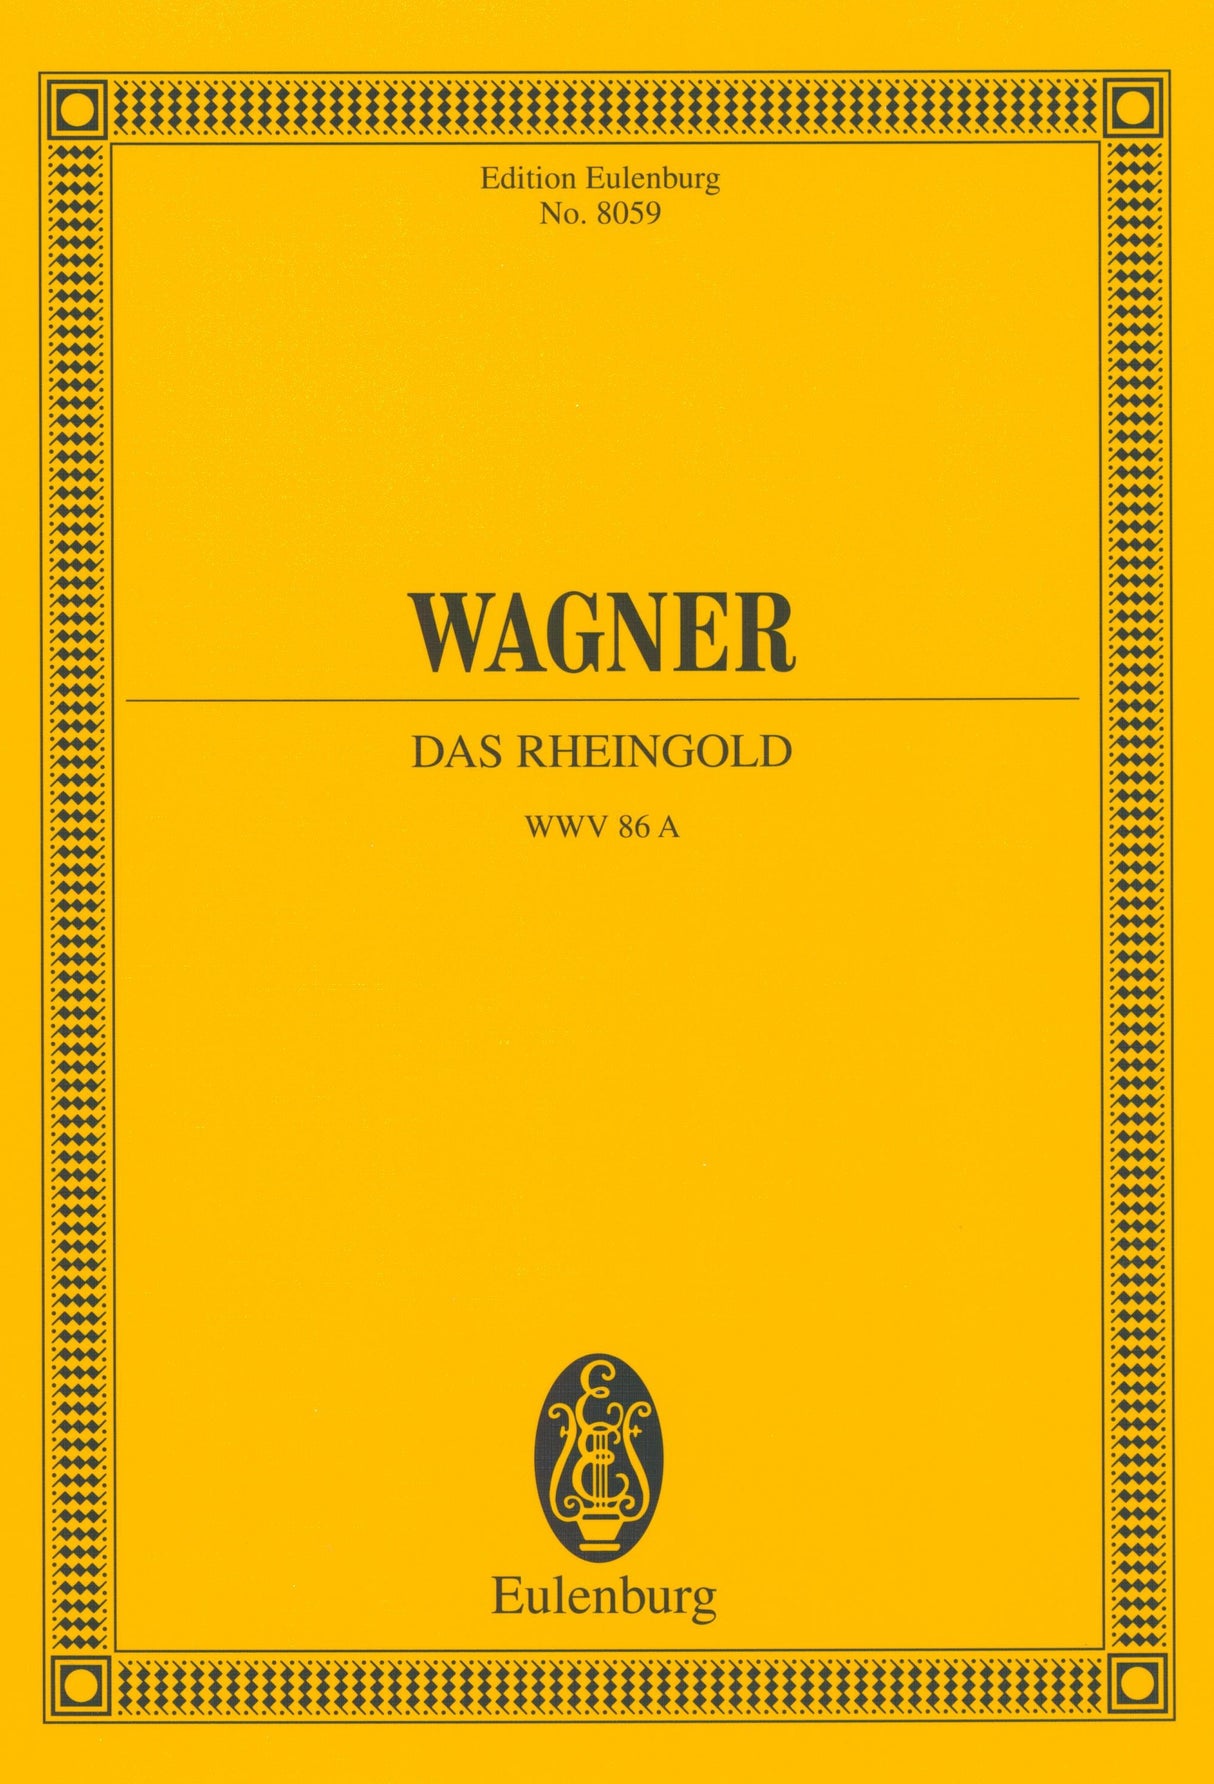 Wagner: Das Rheingold, WWV 86a